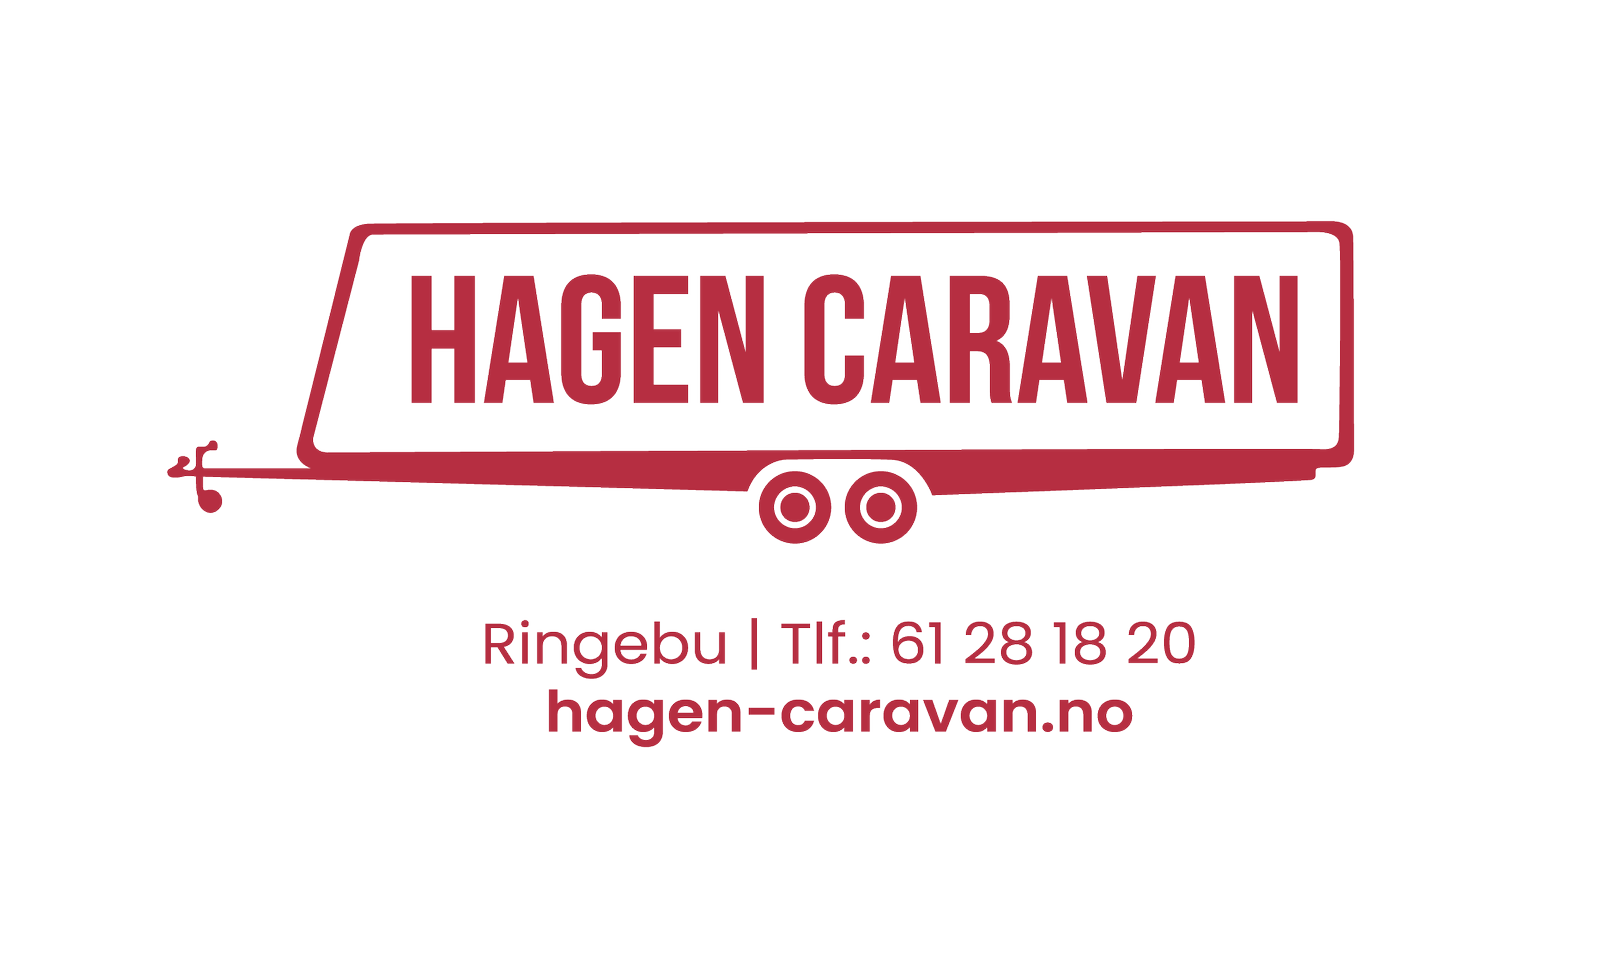 Hagen Caravan AS